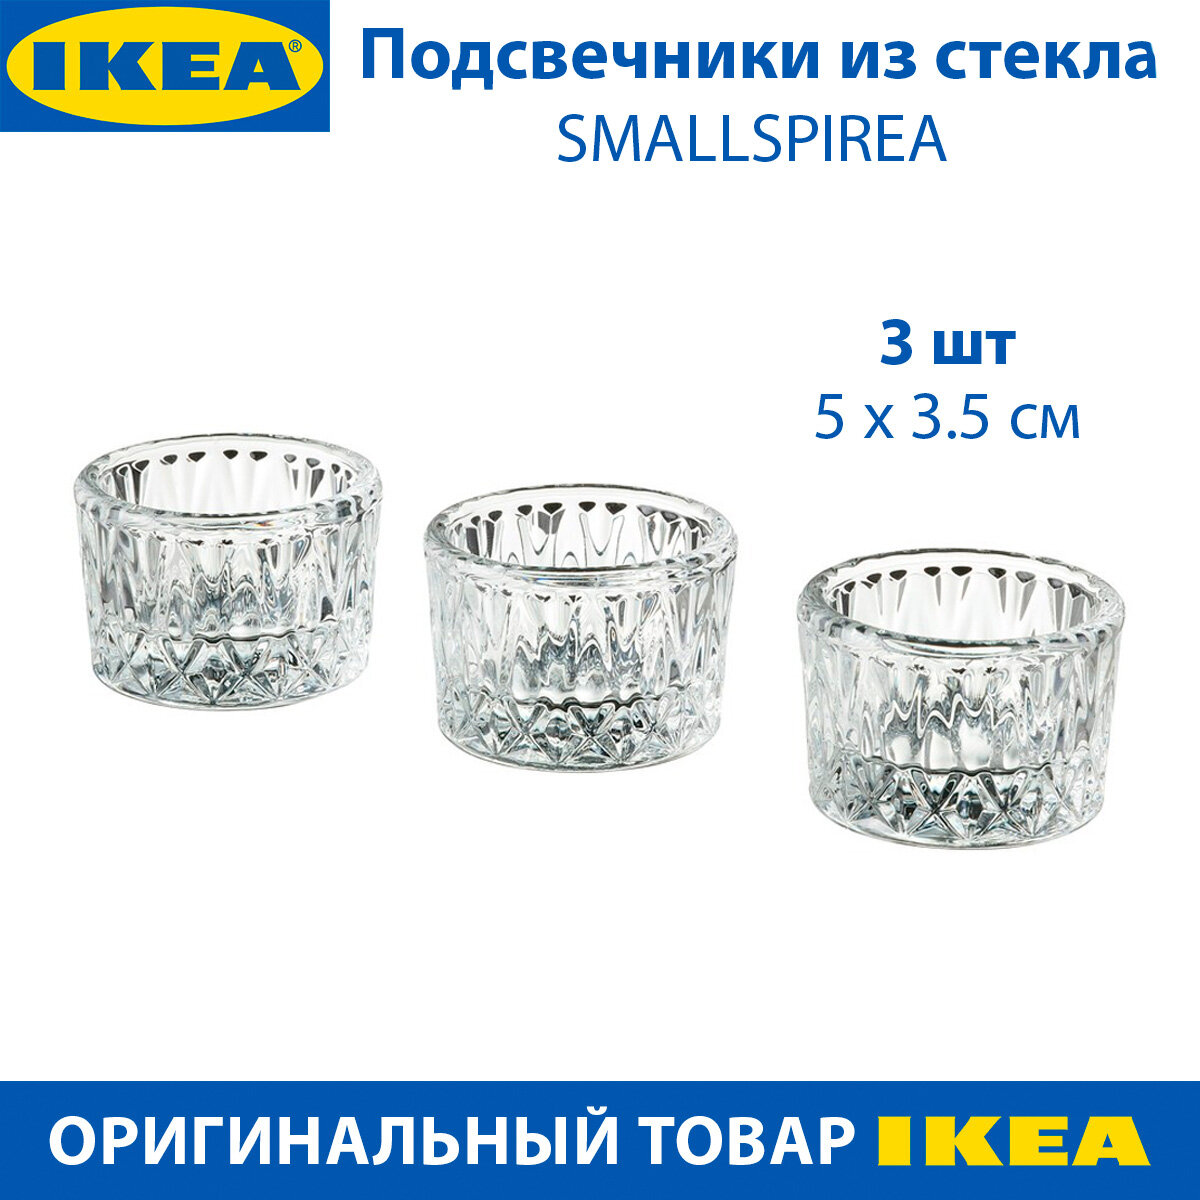 Подсвечники IKEA - SMALLSPIREA (смэллспирея), стеклянные, с узором, 5х5х3.5 см, 3 шт в упаковке